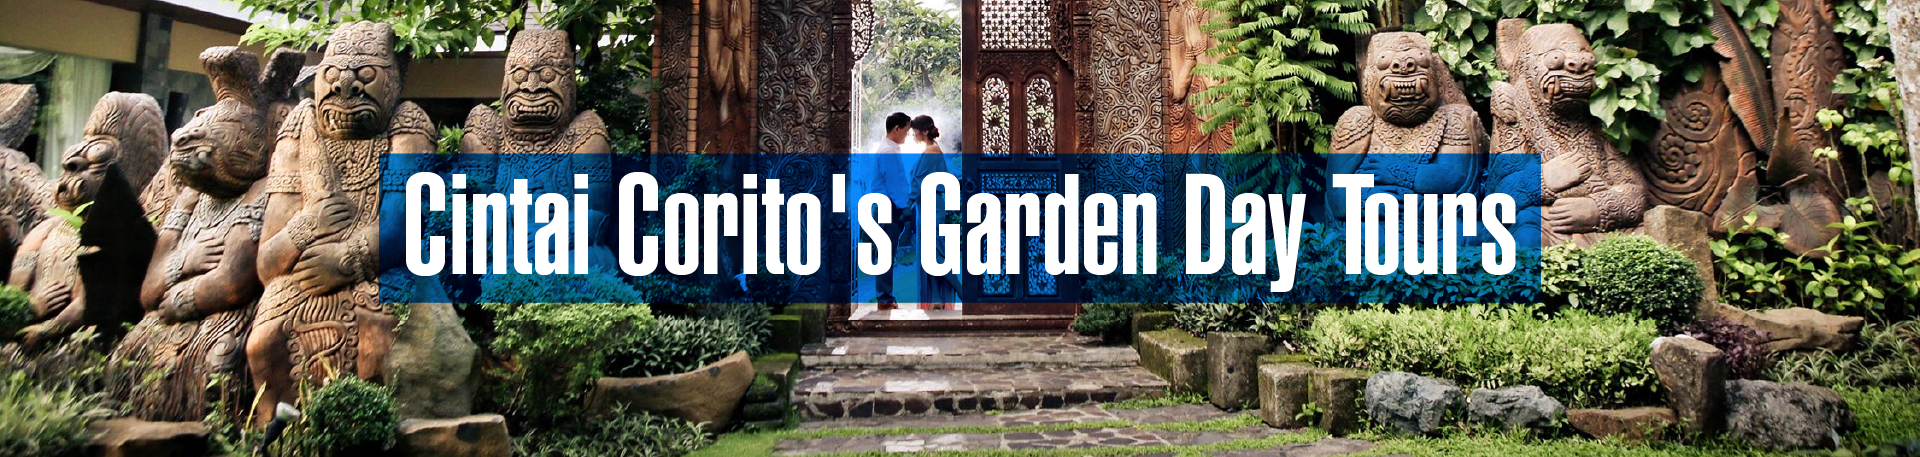 Cintai Corito's Garden, Balete, Batangas